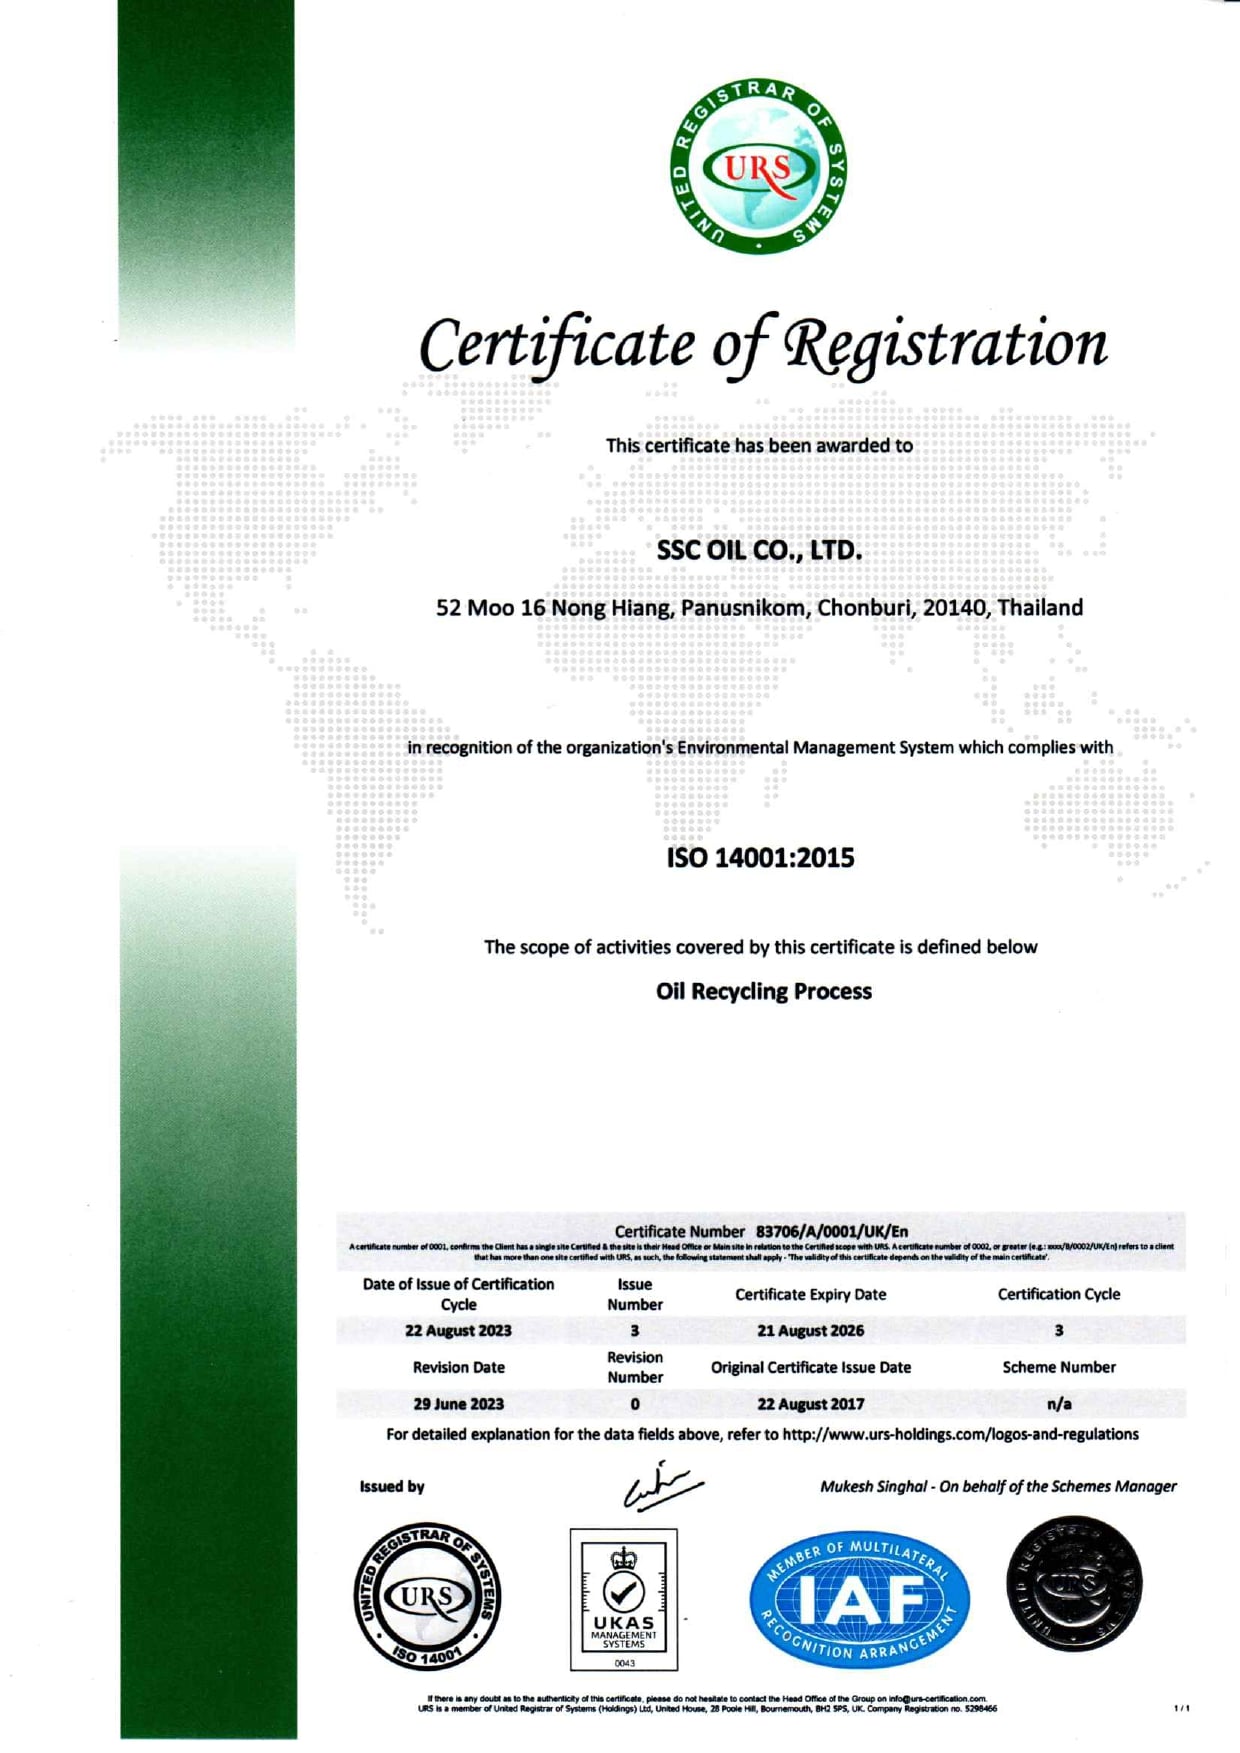 SSC 油 ISO 14001-2015 证书